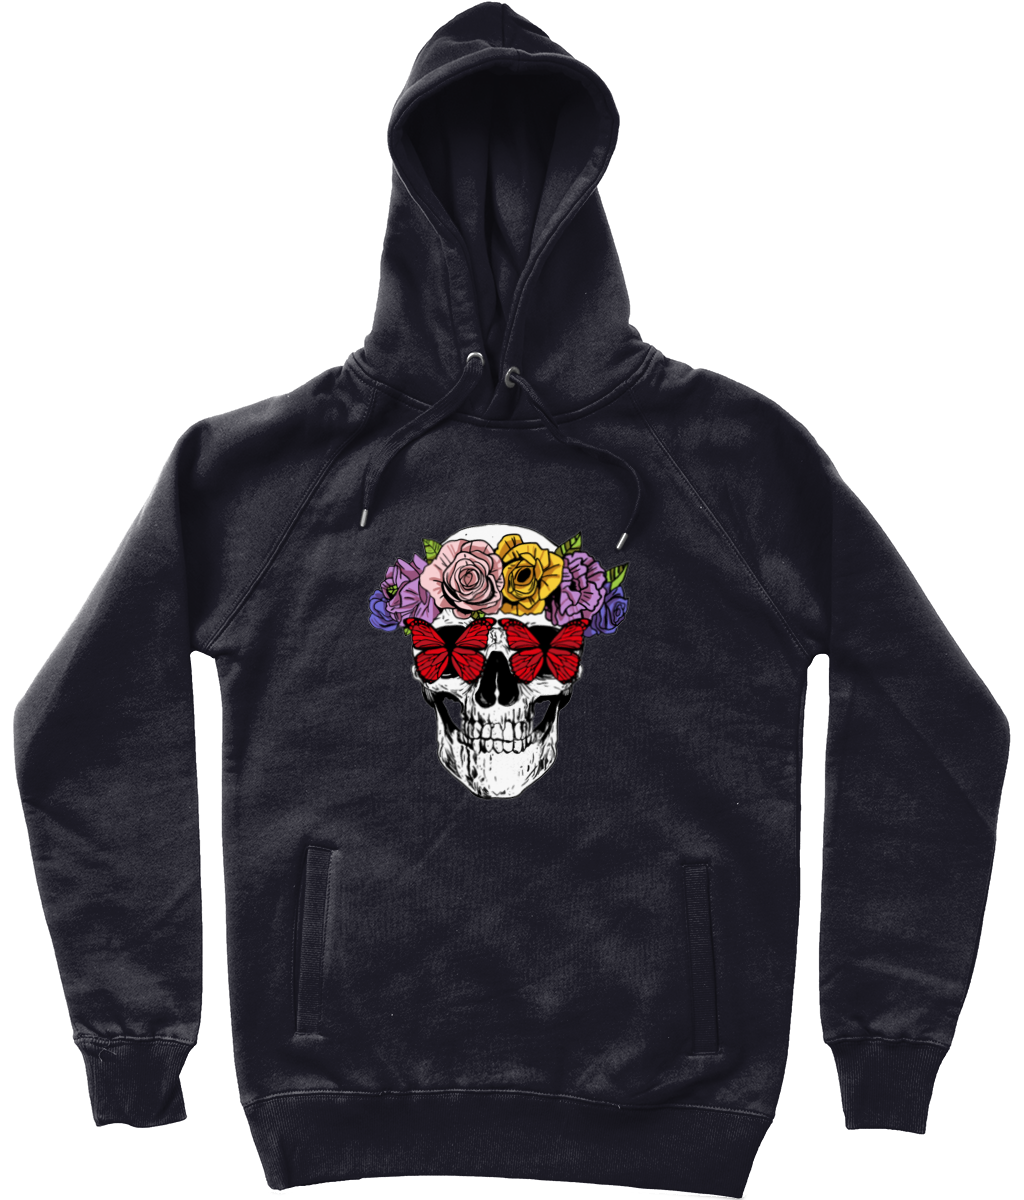 Garden of Skulls Graphic Trendy Unisex Pullover Hoodie